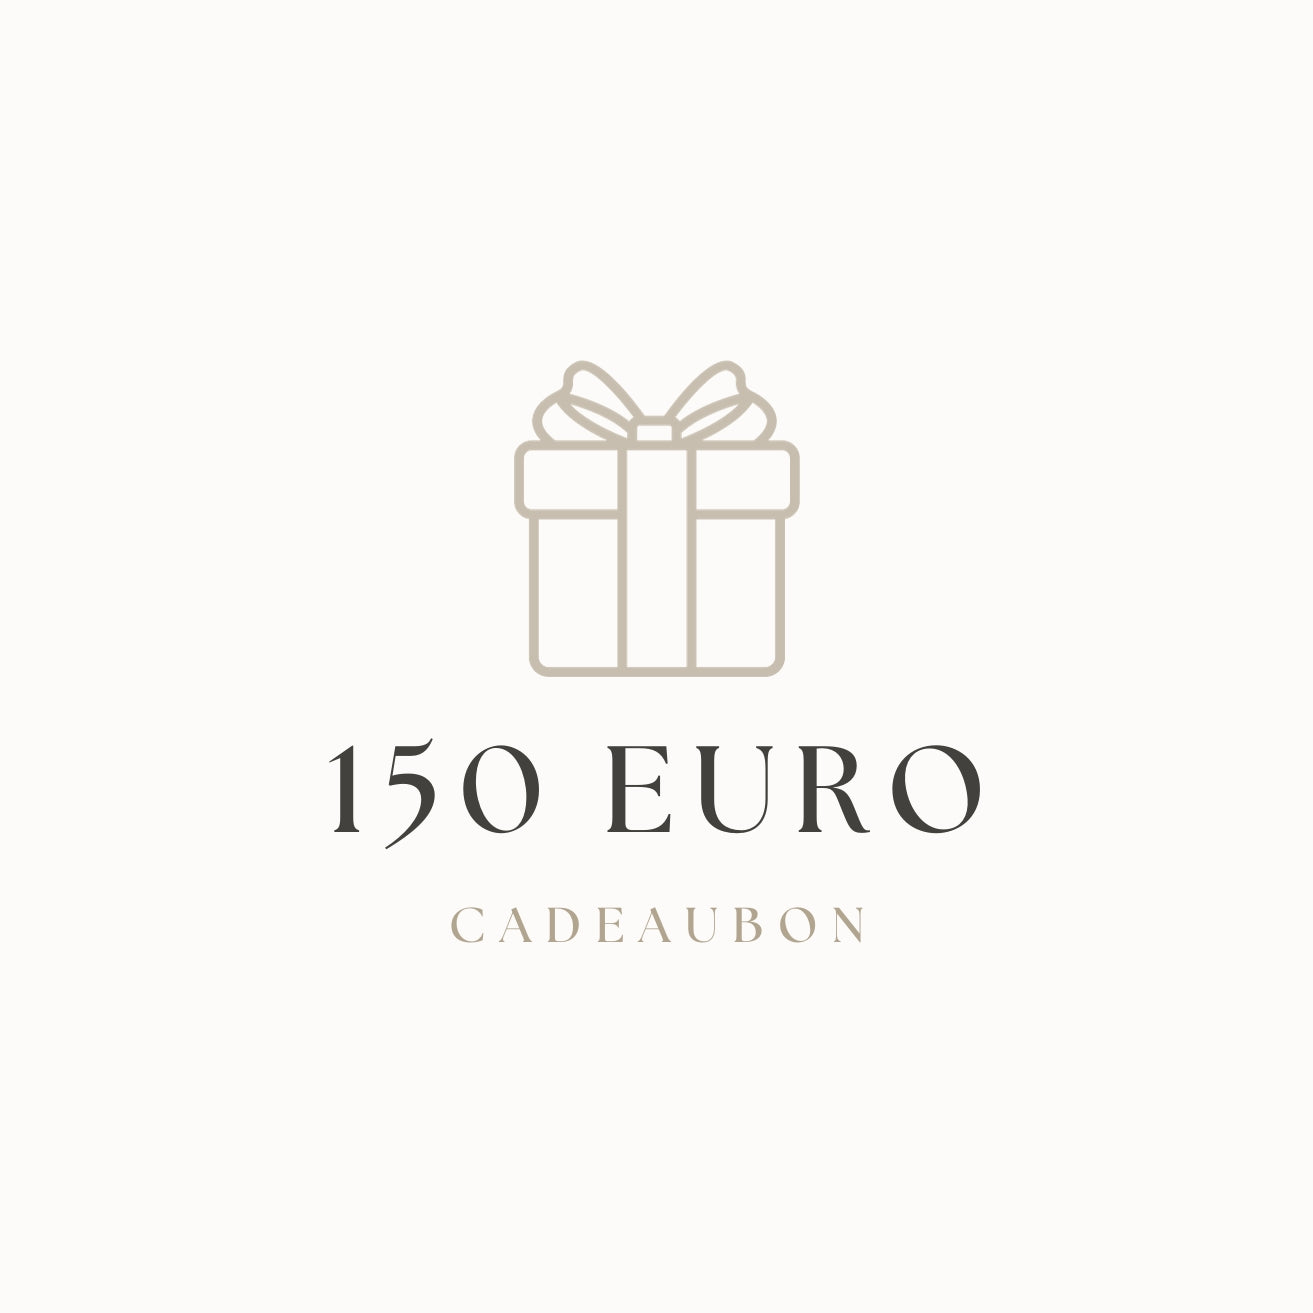 Chèque cadeau | 150 euros